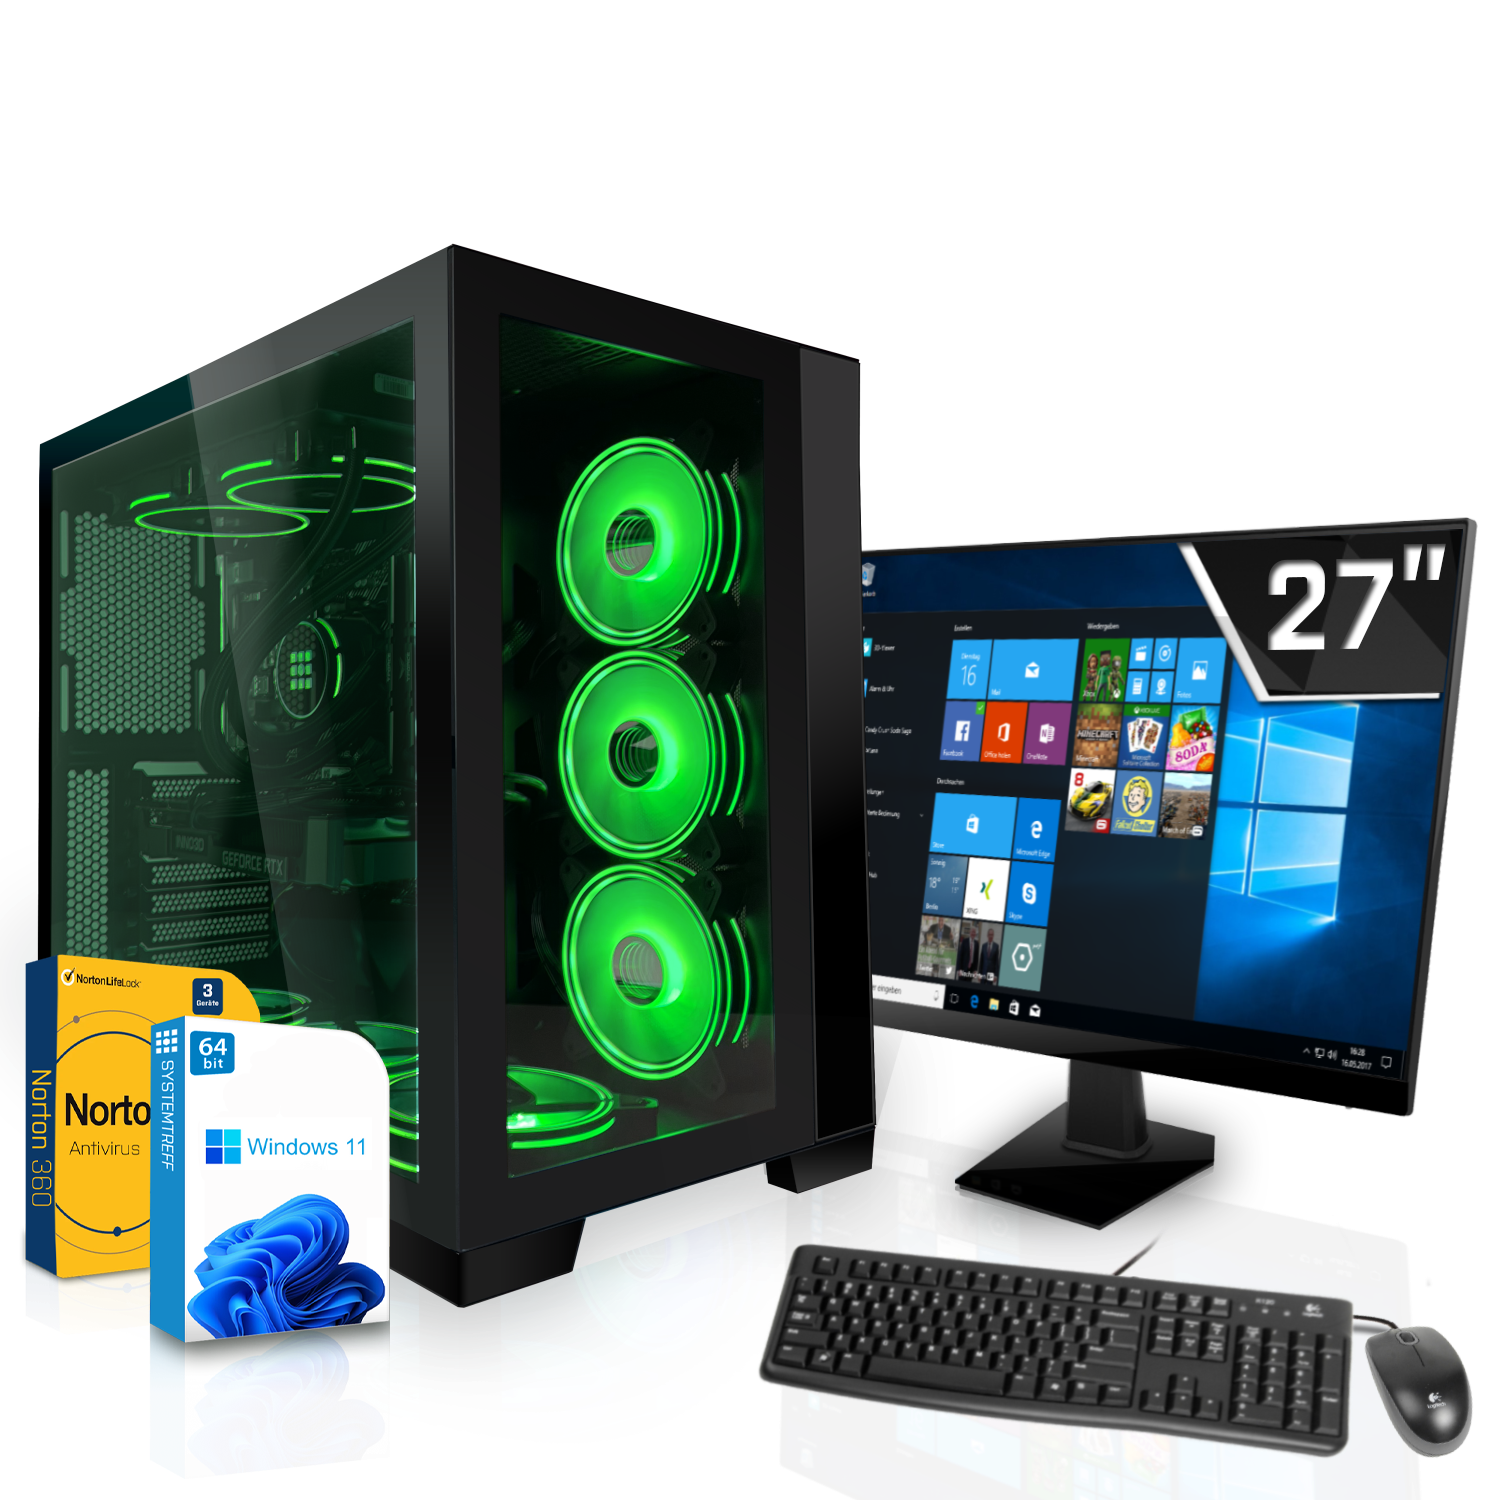 SYSTEMTREFF Gaming Komplett Intel Core Nvidia GDDR6X, GB i9-12900F GB GeForce 3080 PC Prozessor, RTX GB Komplett 10 10GB RAM, 1000 mSSD, i9-12900F, mit 32